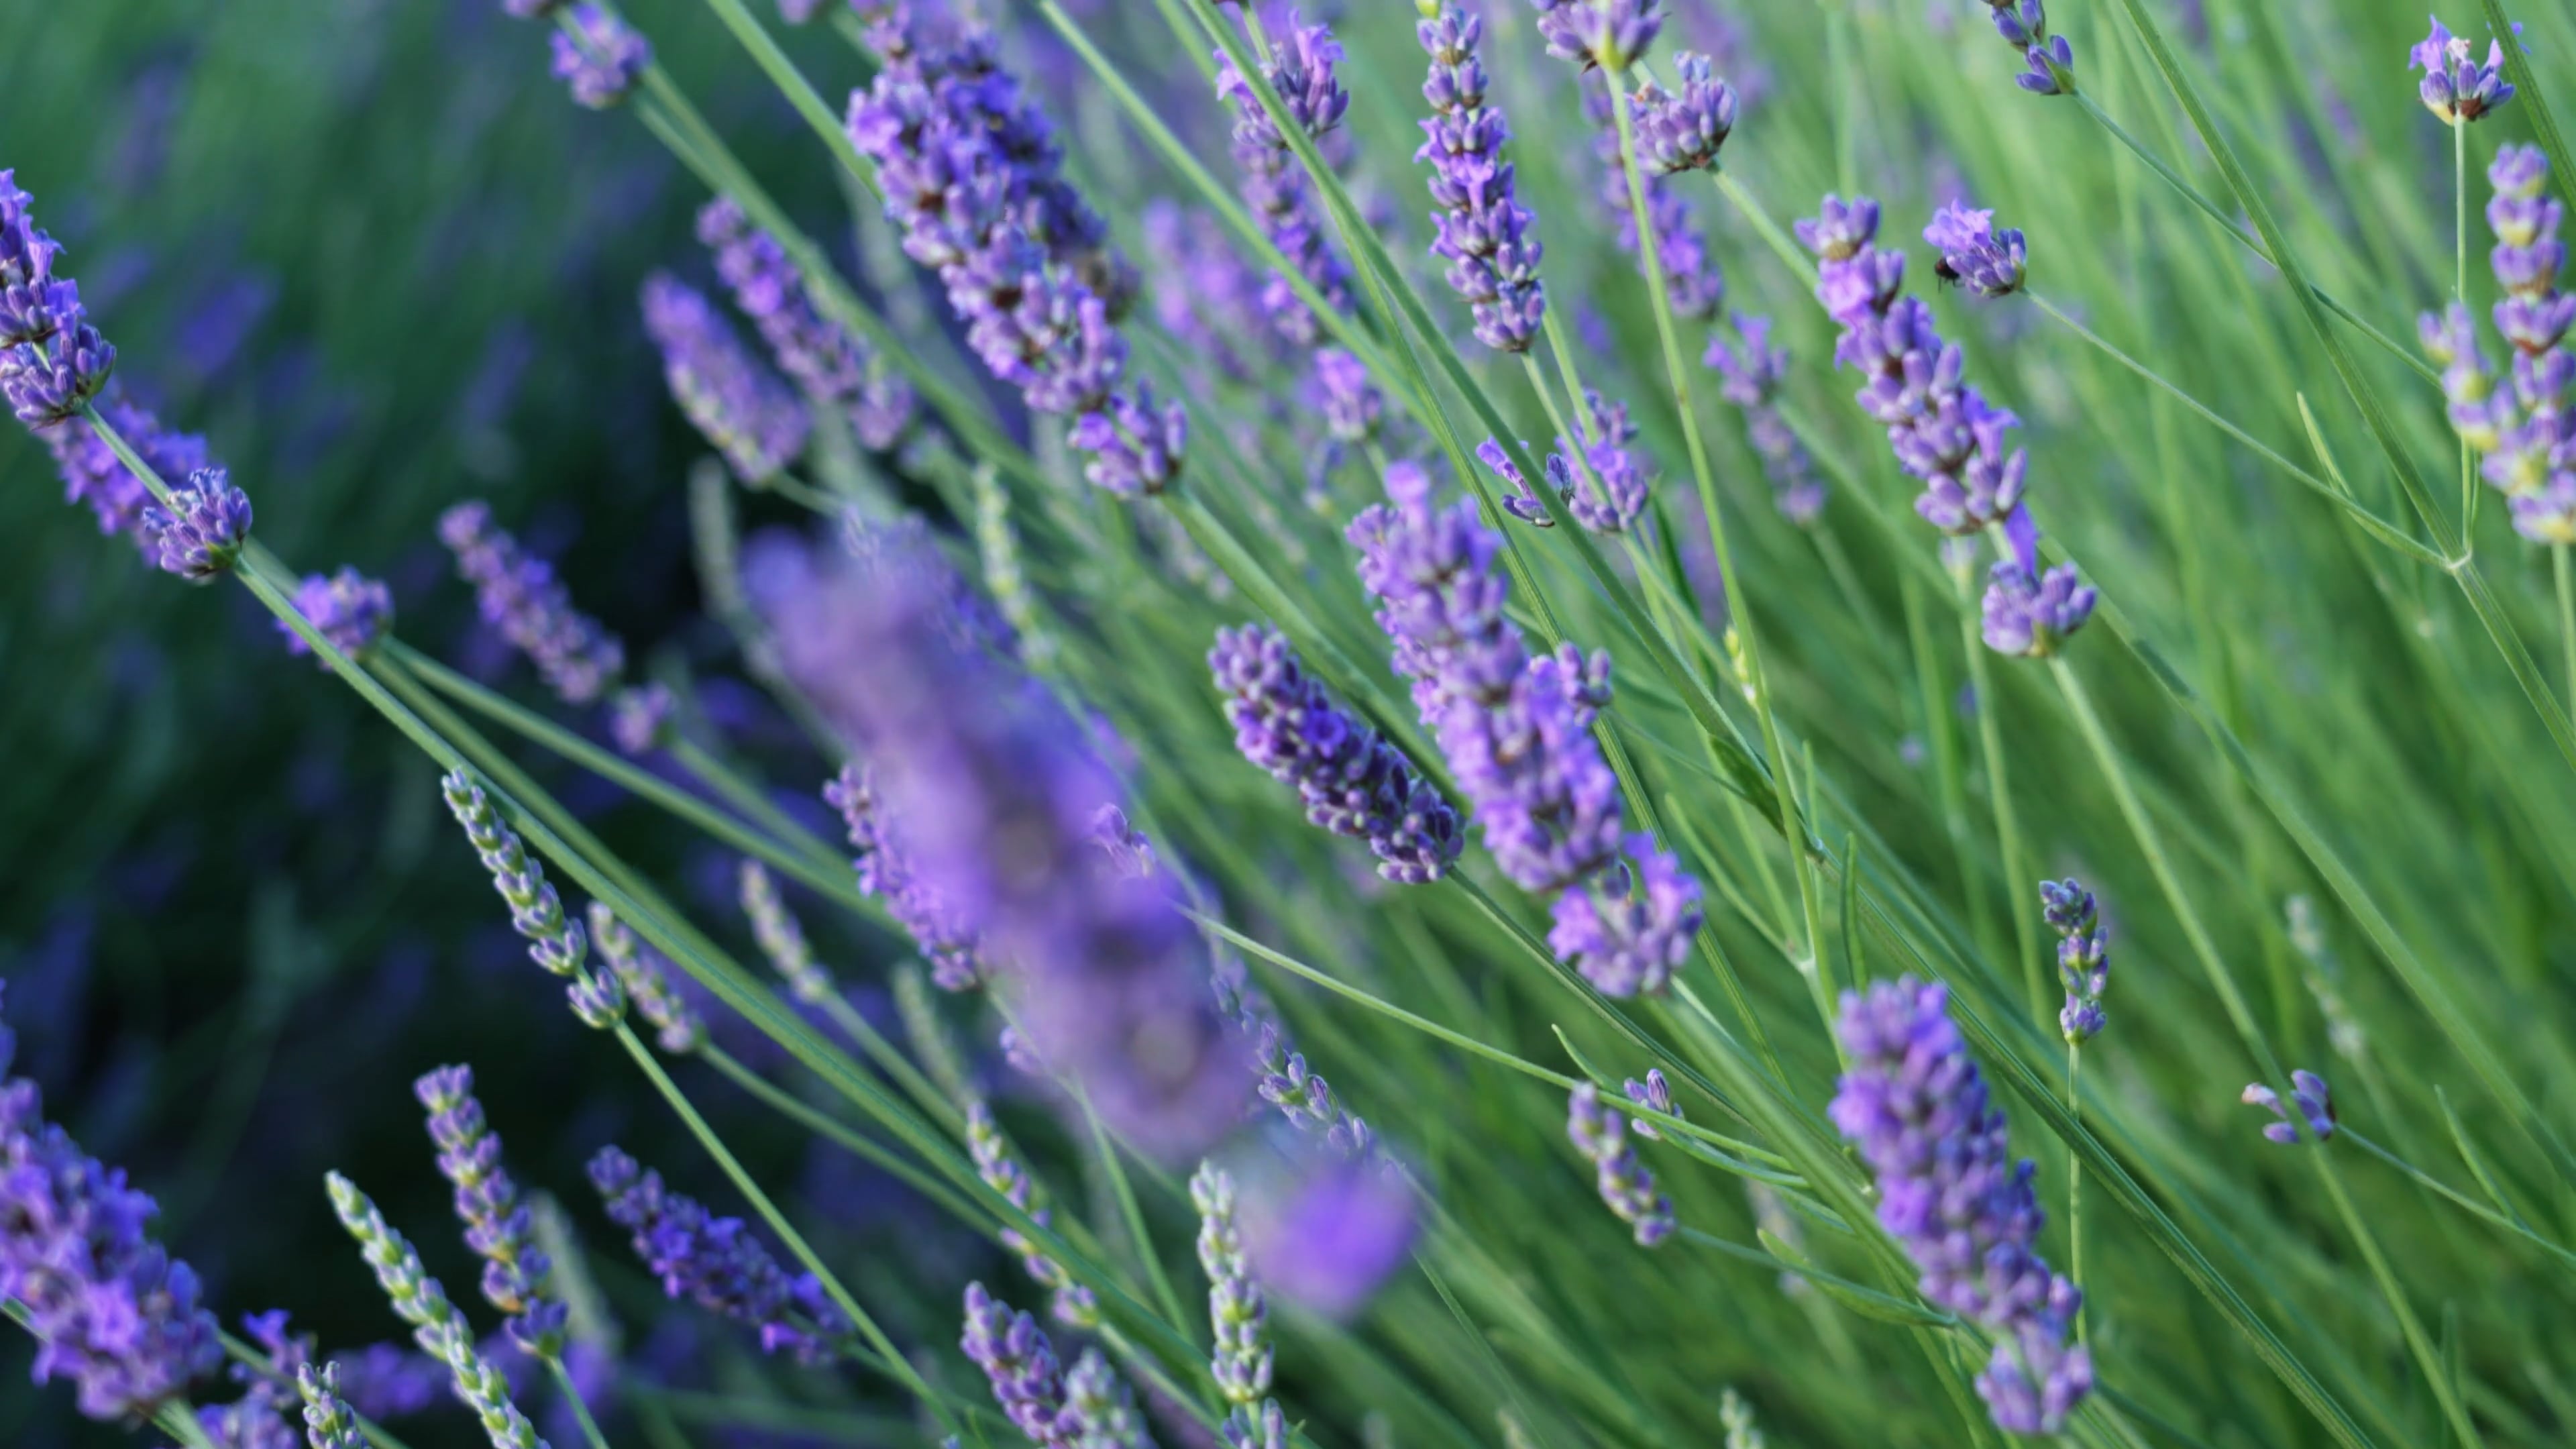 Close-up of lavender, Floral elegance, Nature's details, Captivating beauty, 3840x2160 4K Desktop